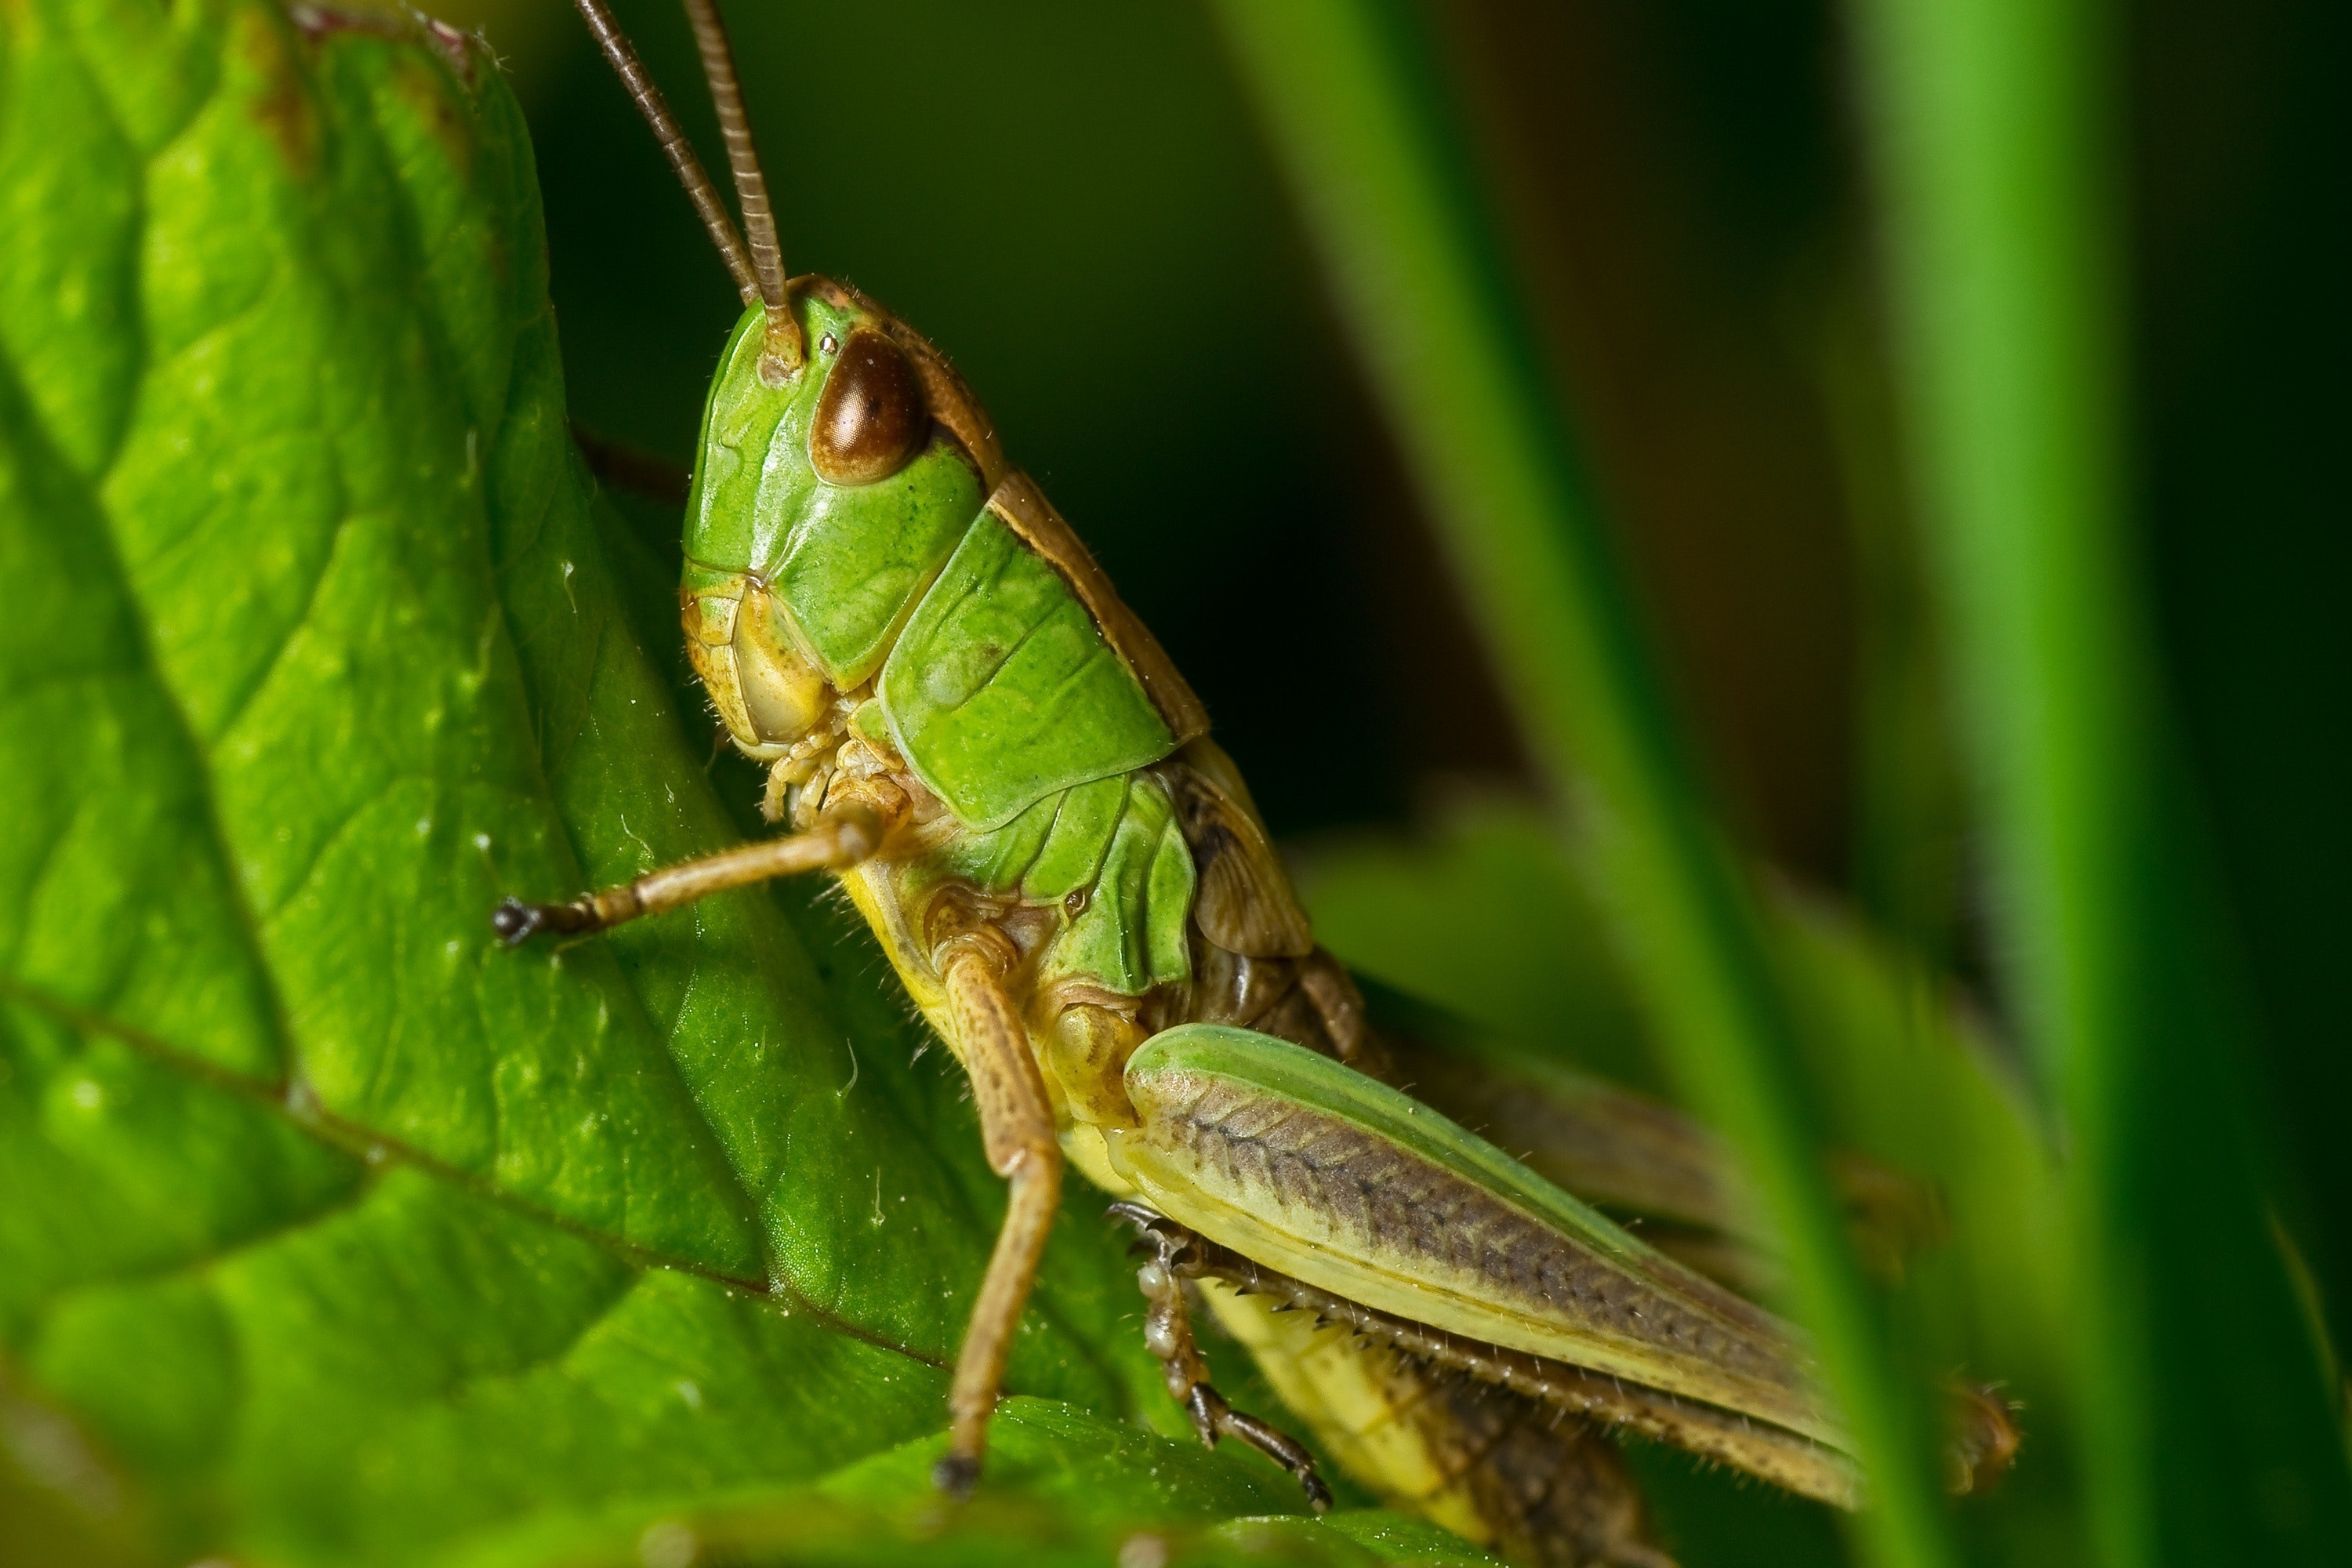 Green grasshopper, Arthropod bug, Nature's beauty, Close-up shot, 3000x2000 HD Desktop